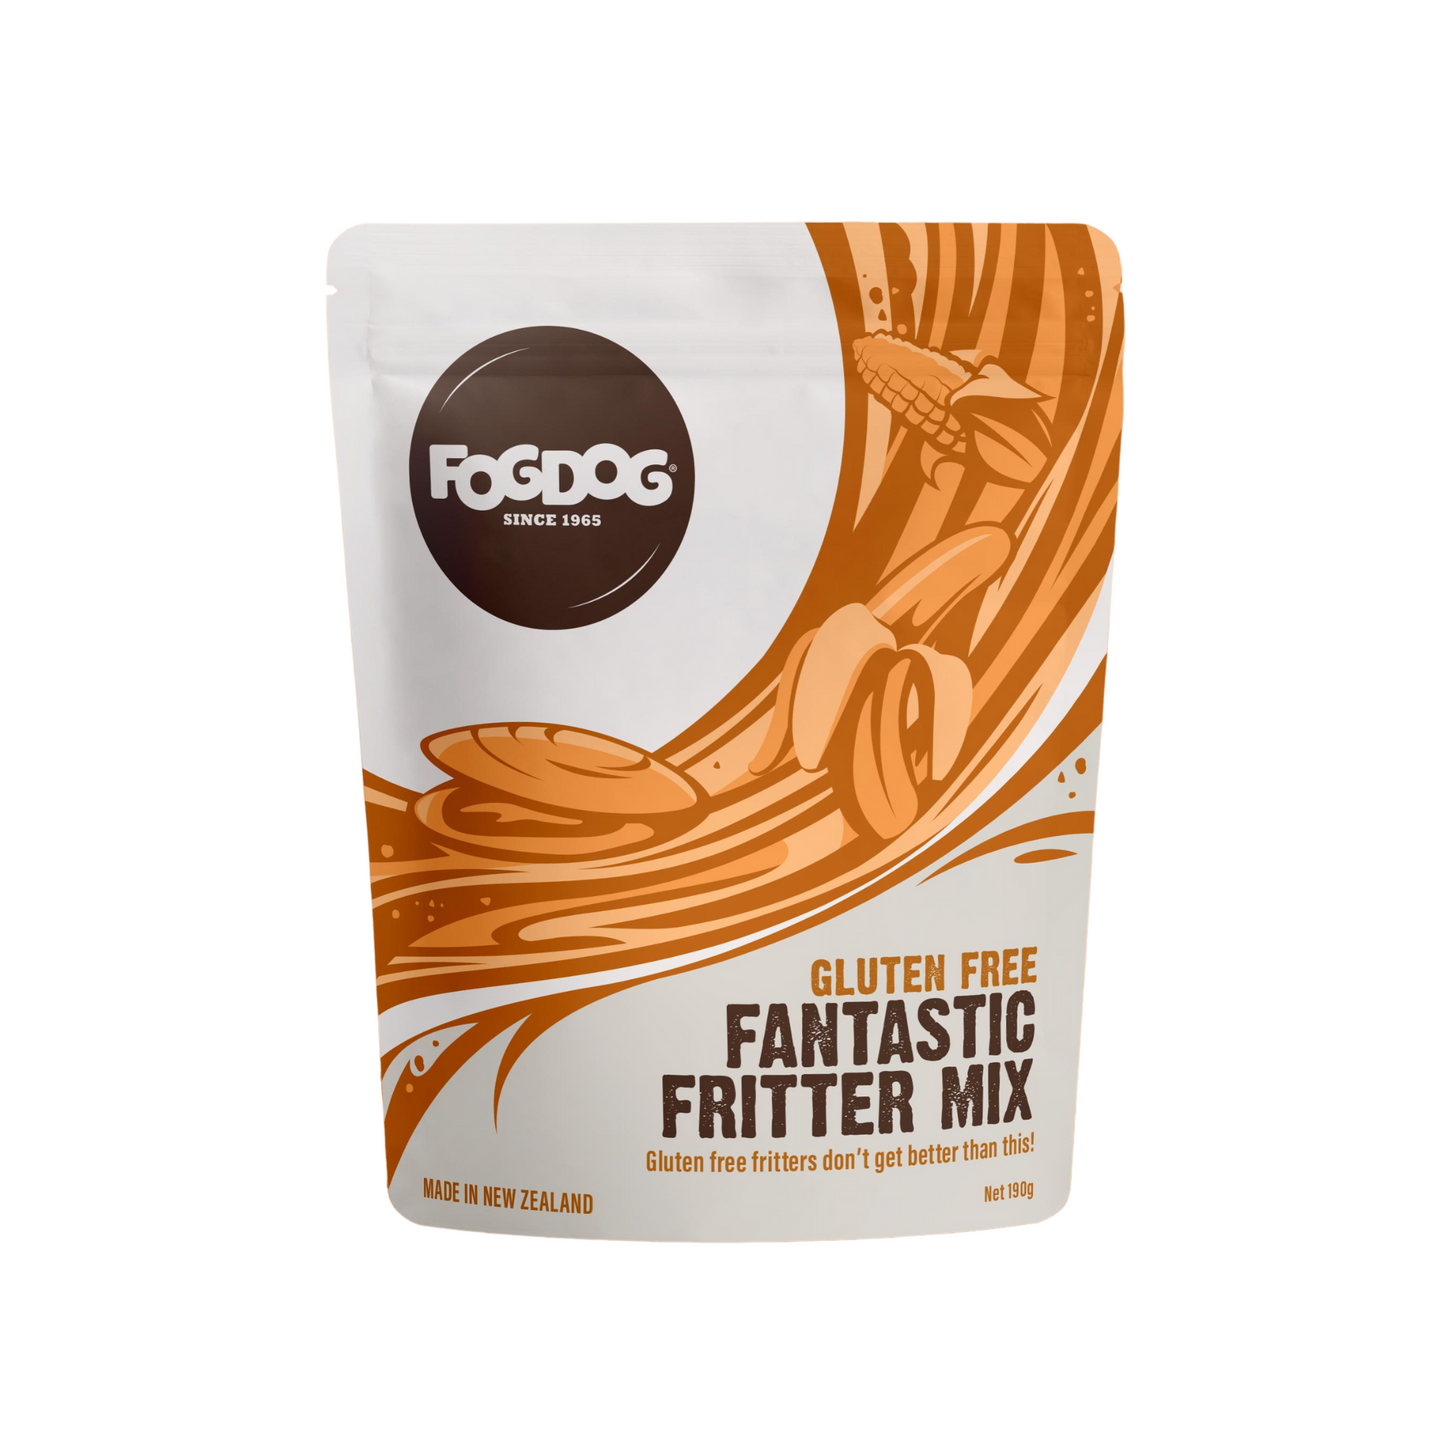 Gluten Free Fantastic Fritter Mix